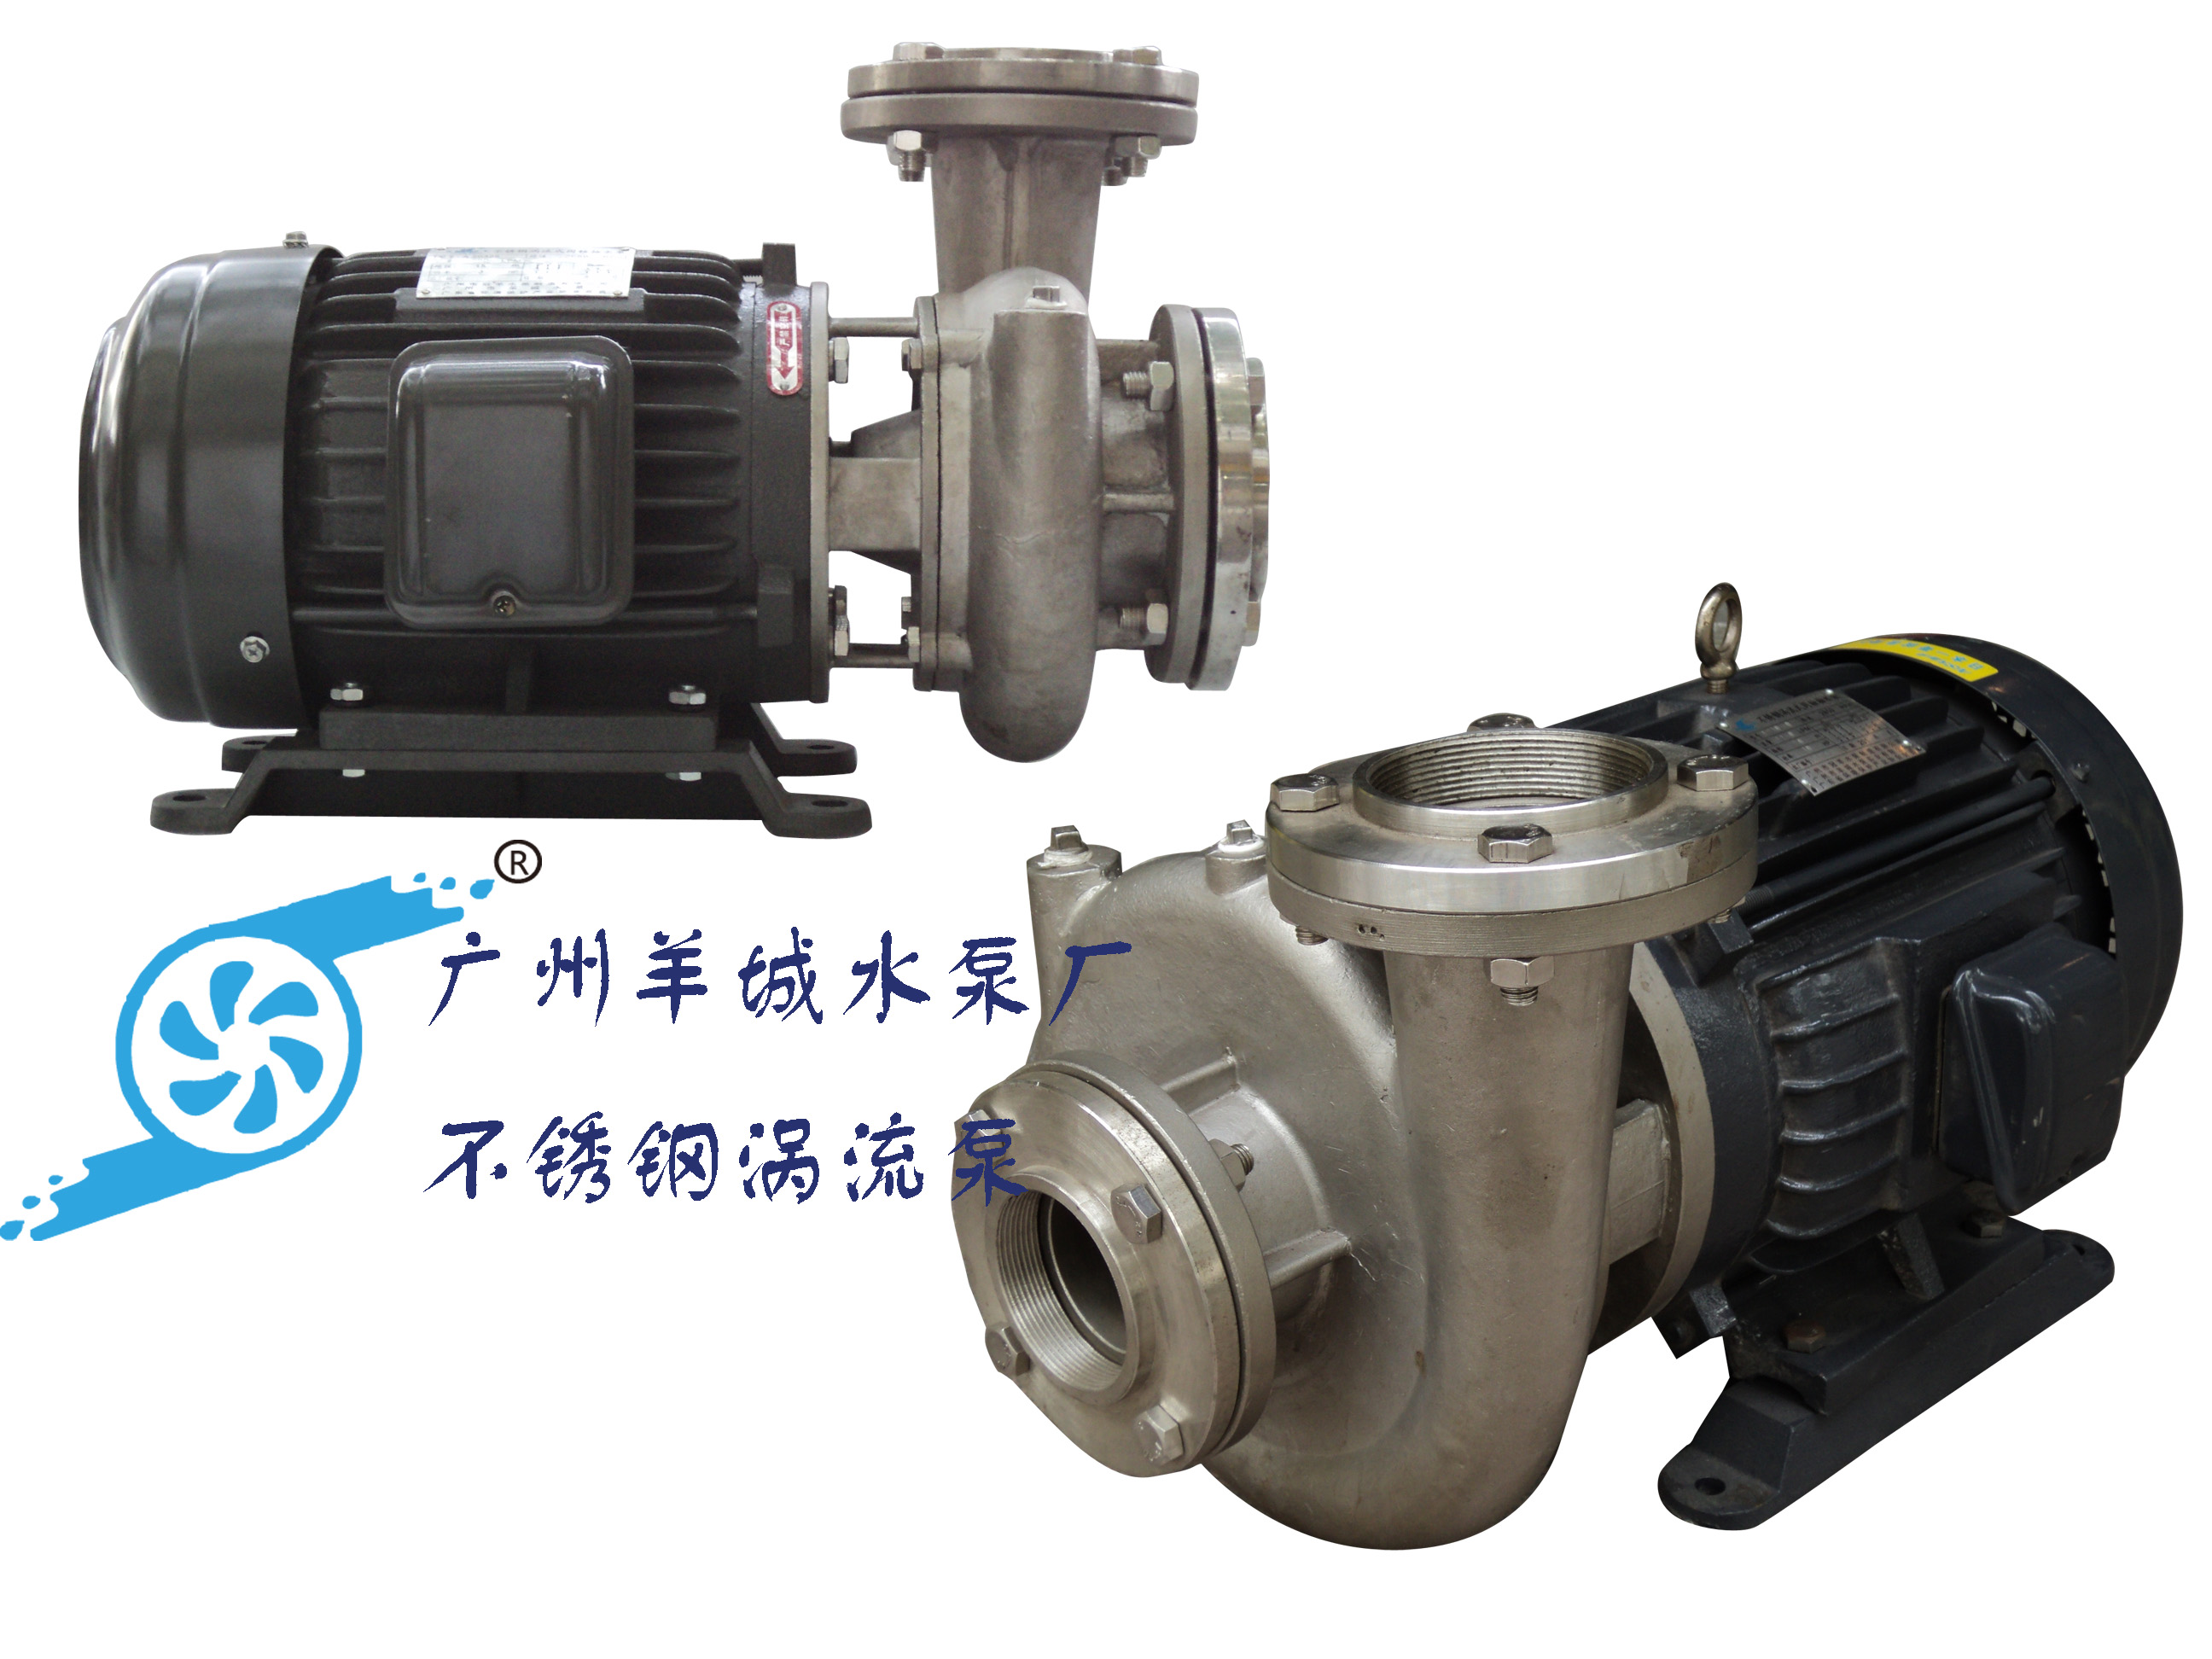 羊城水泵|不锈钢涡流式同轴抽水泵|广州羊城水泵厂|羊城泵业|广州不锈钢水泵